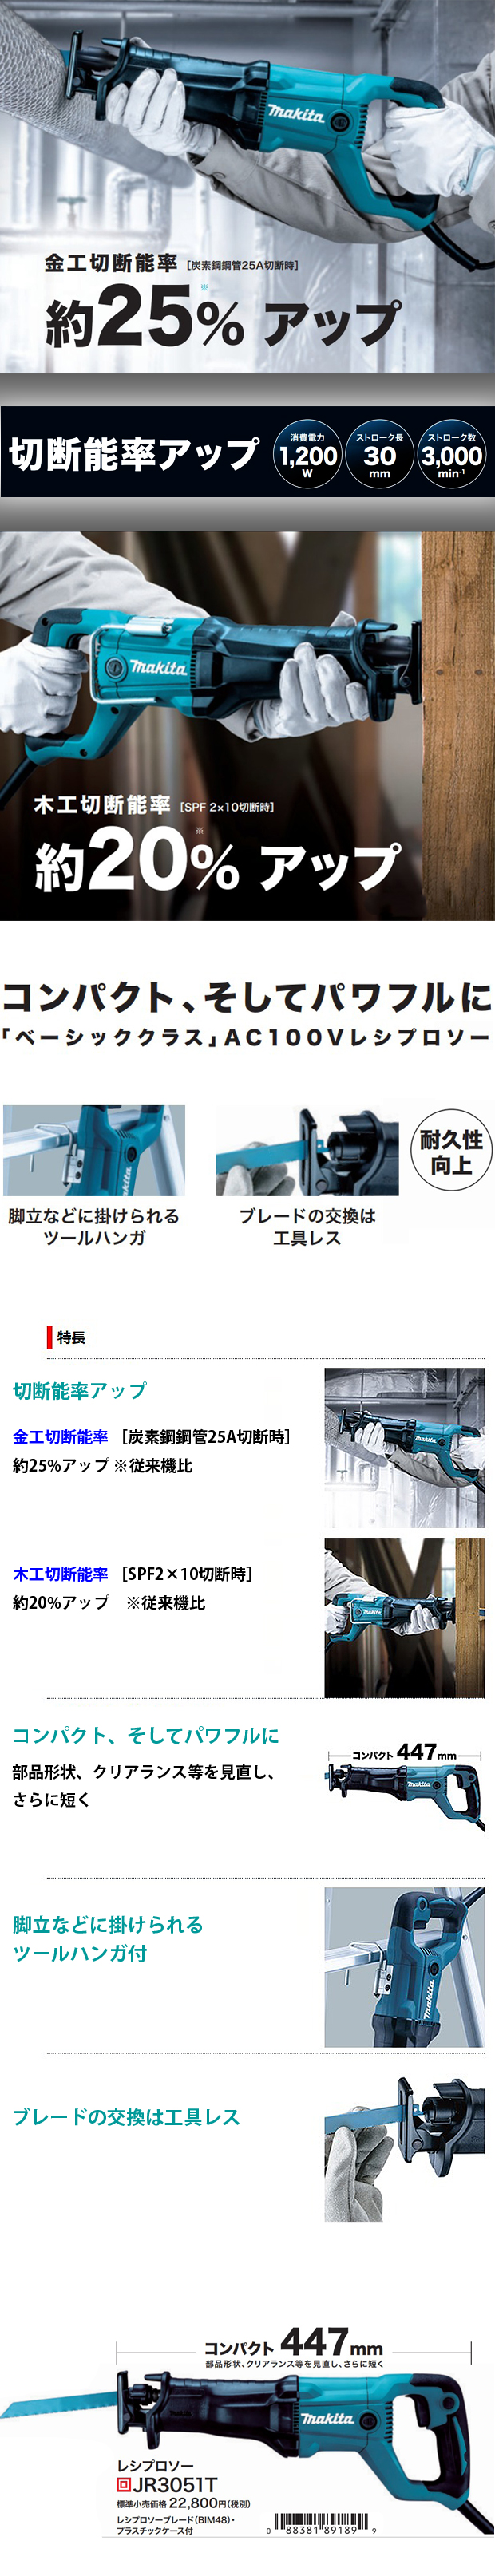 マキタ レシプロソー JR3051T 電動工具・エアー工具・大工道具（電動